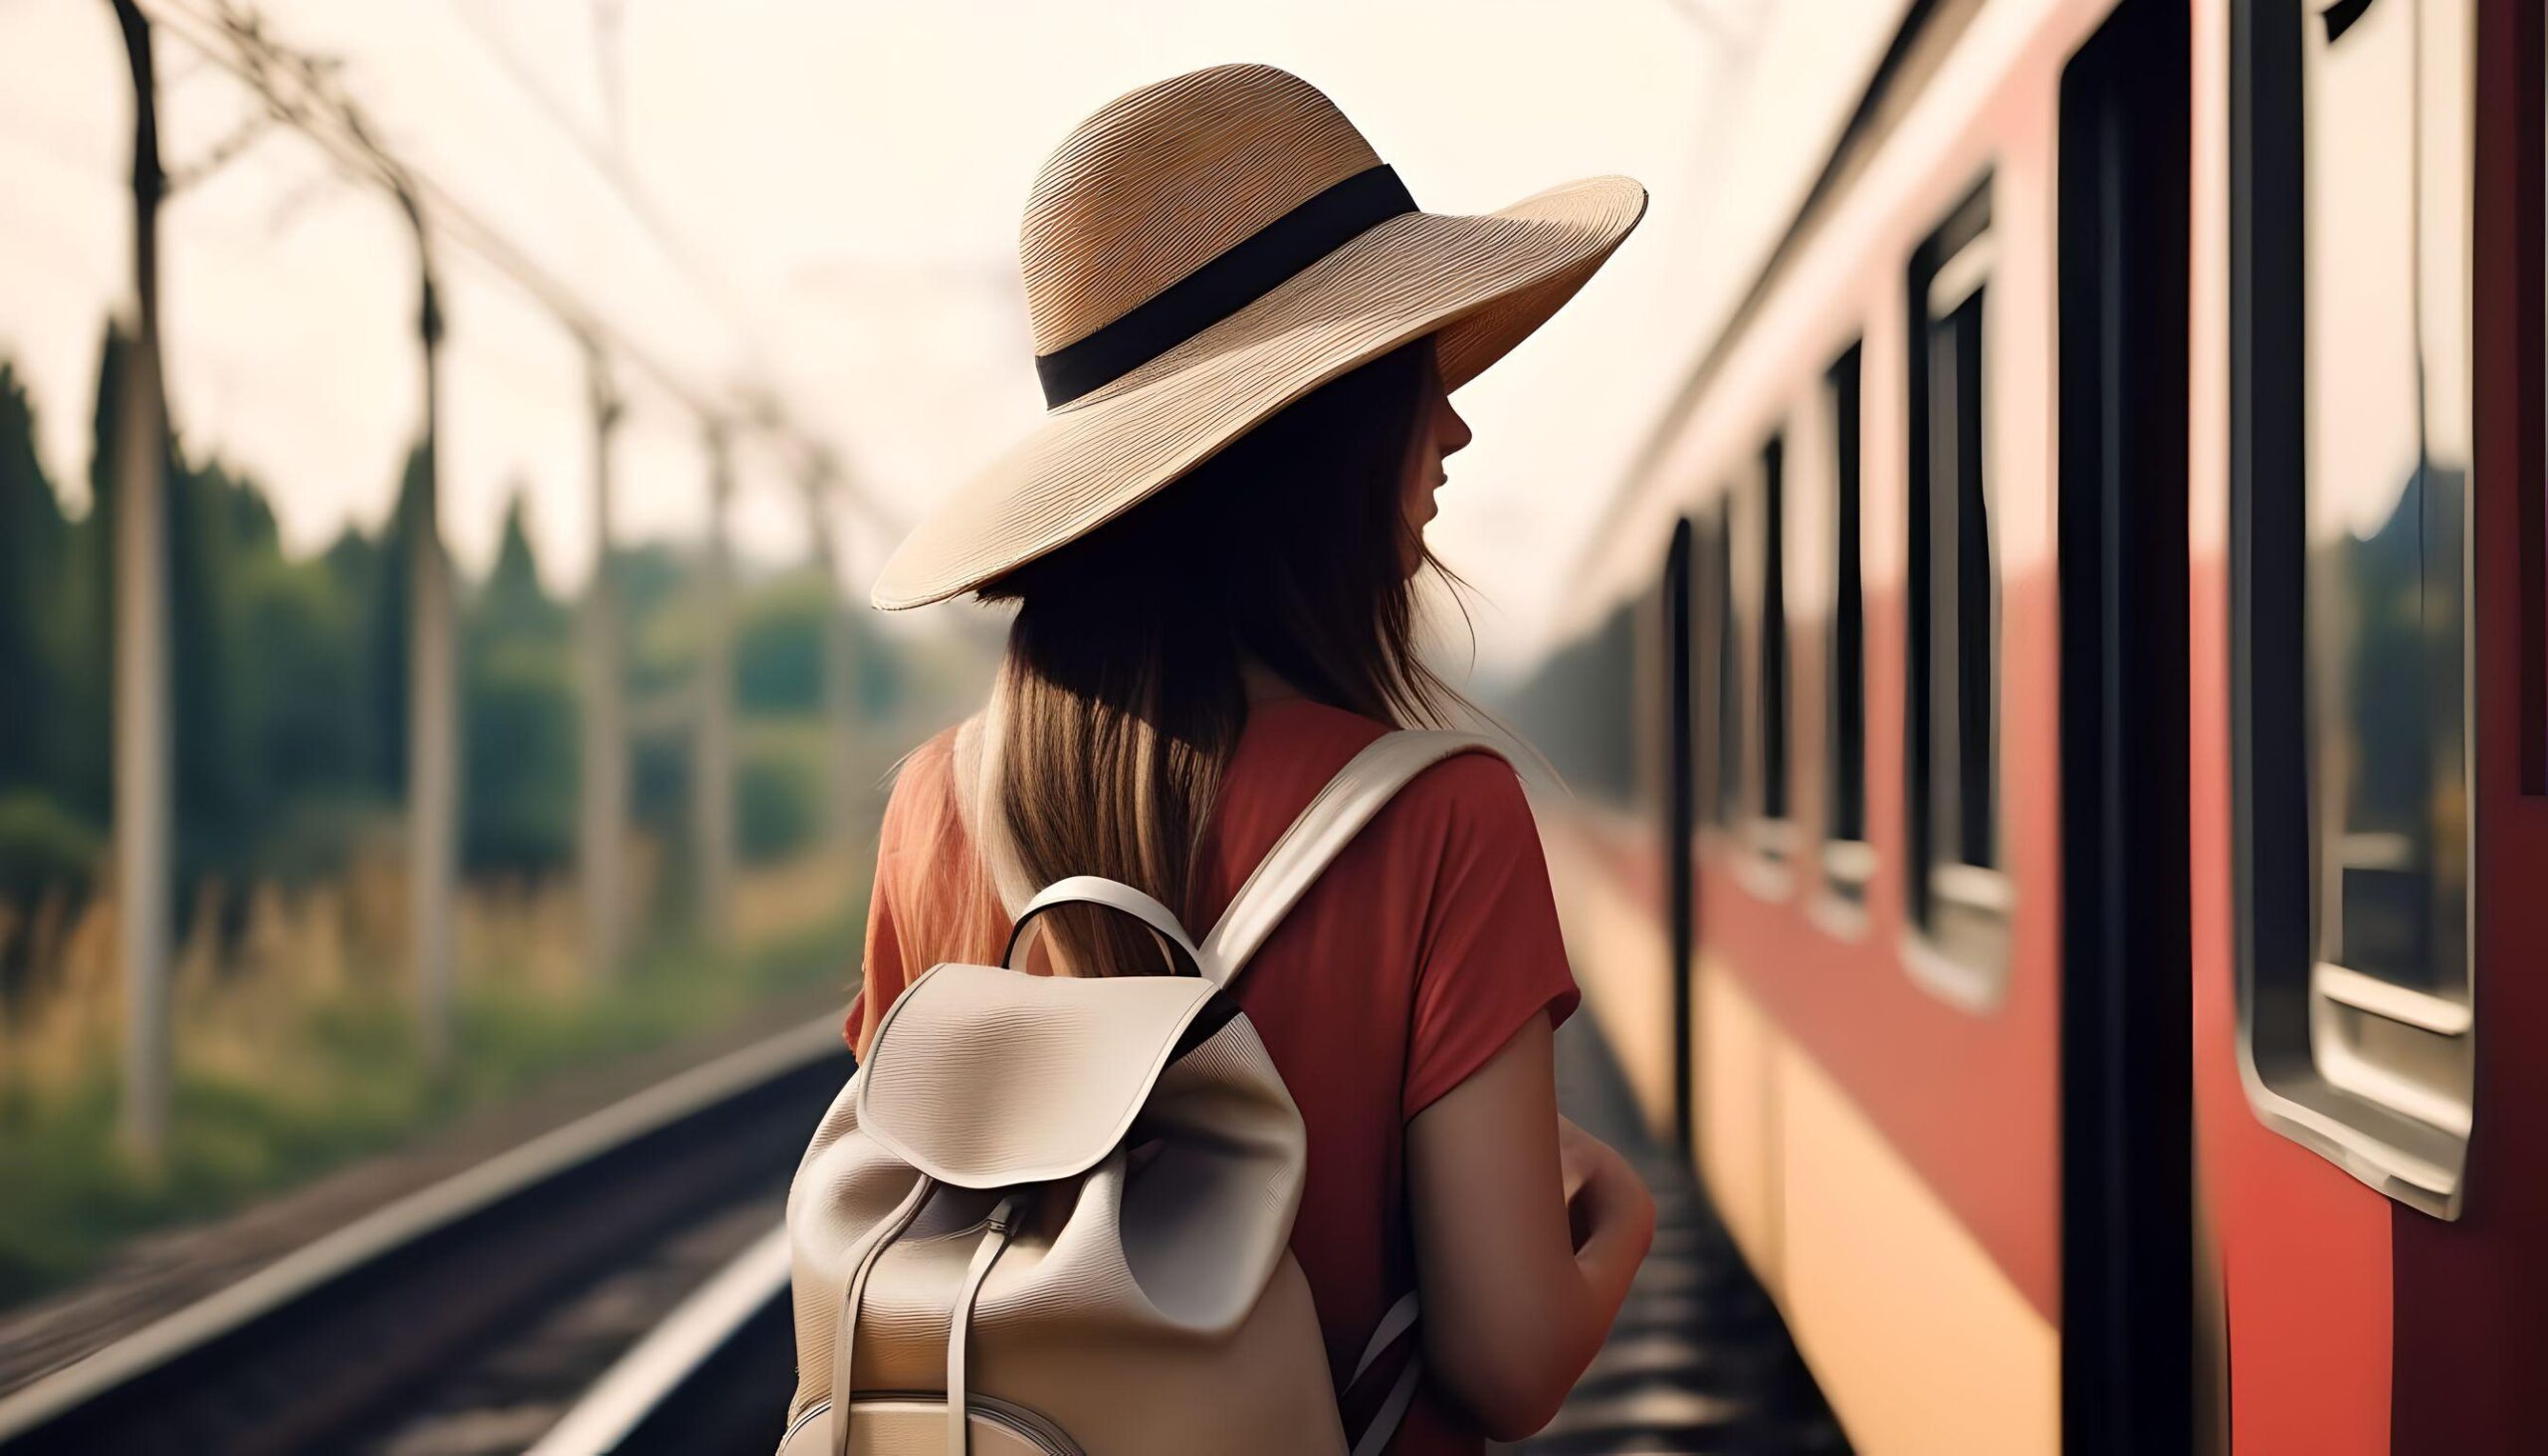 La meta è il viaggio: cronaca di un viaggio in treno tra Piemonte e Toscana